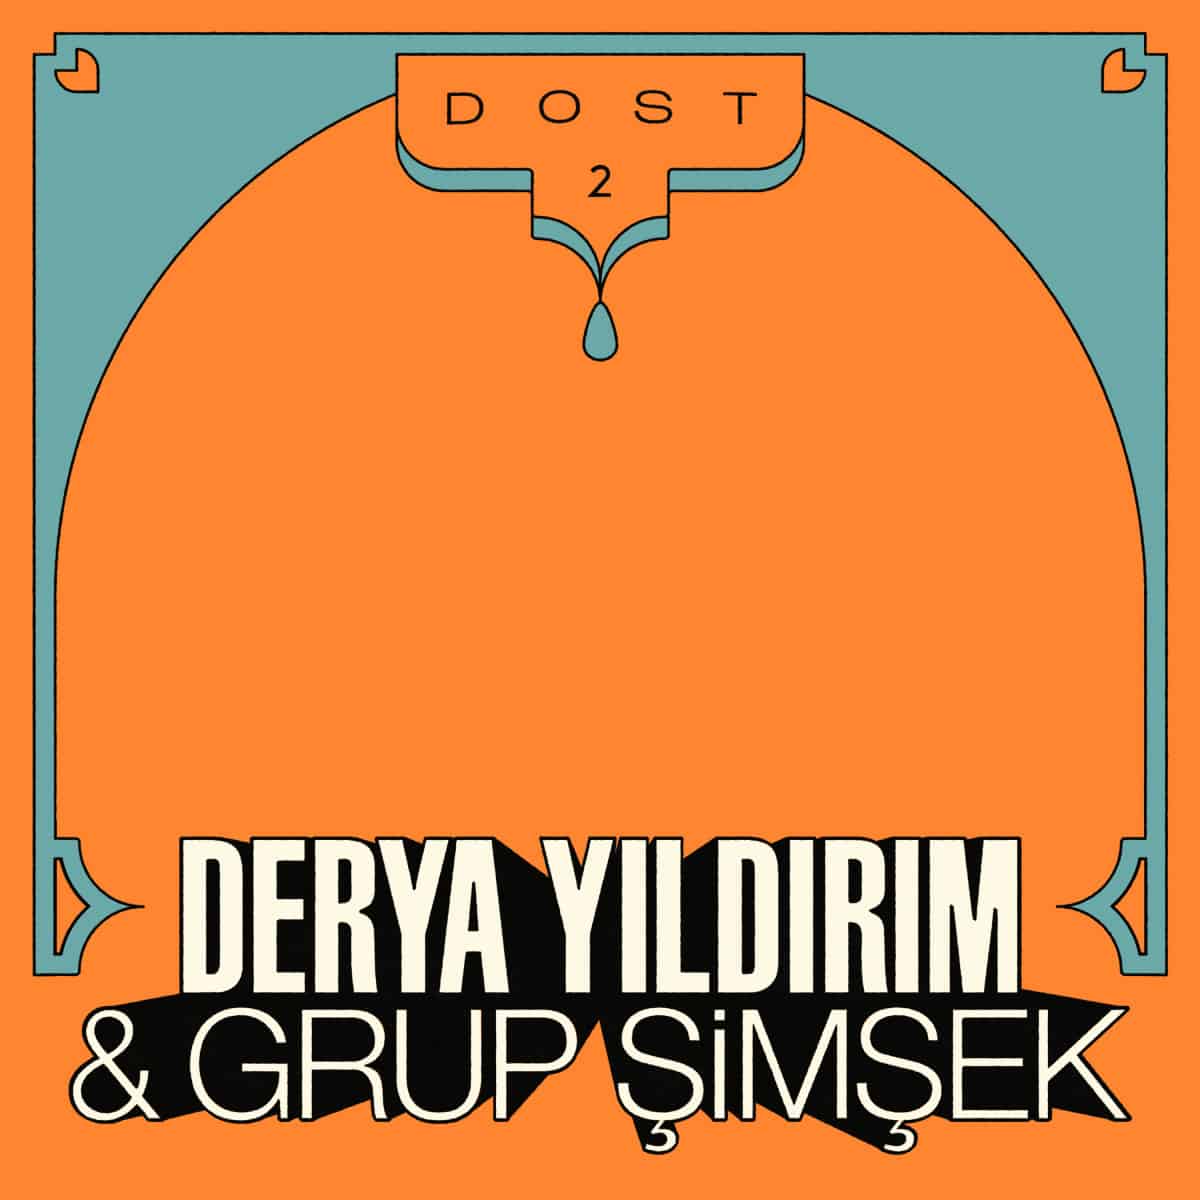 Derya Yildrim & Simsek Grup - DOST 2